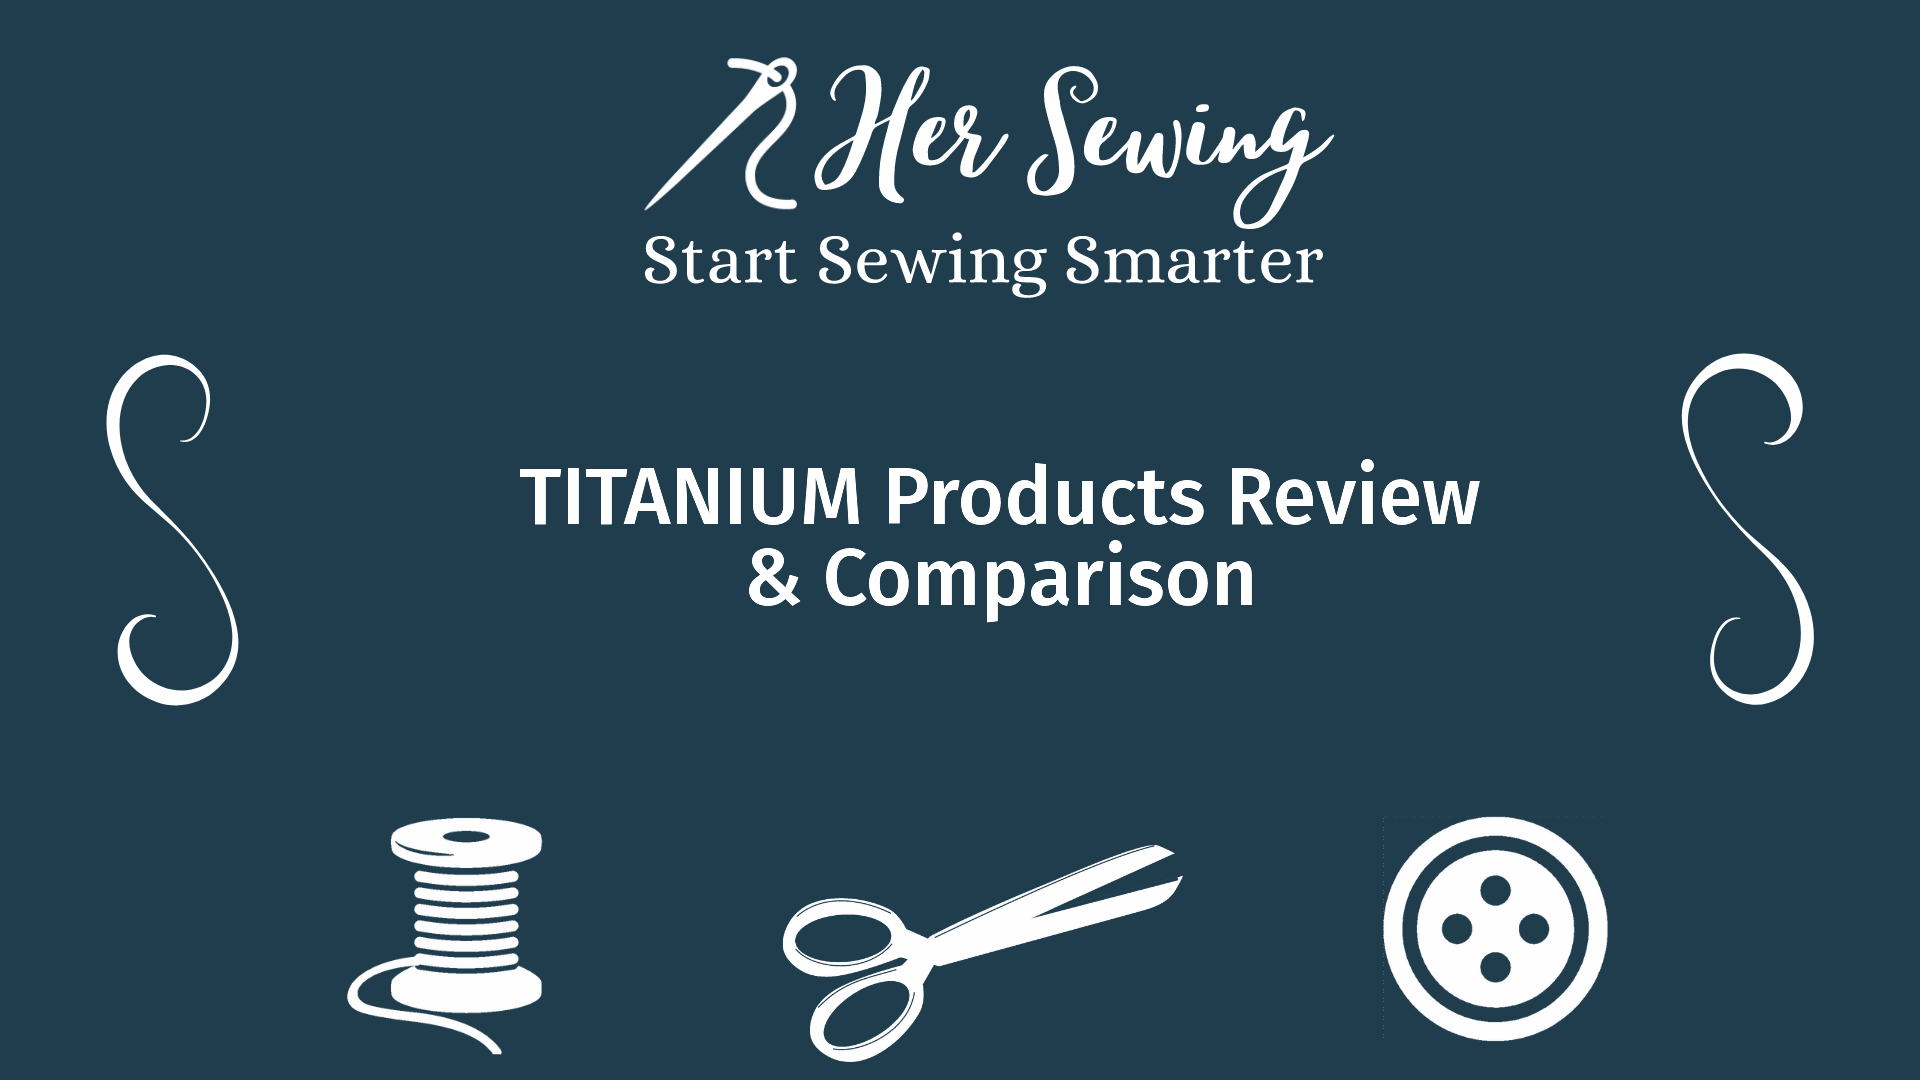 TITANIUM Products Review & Comparison